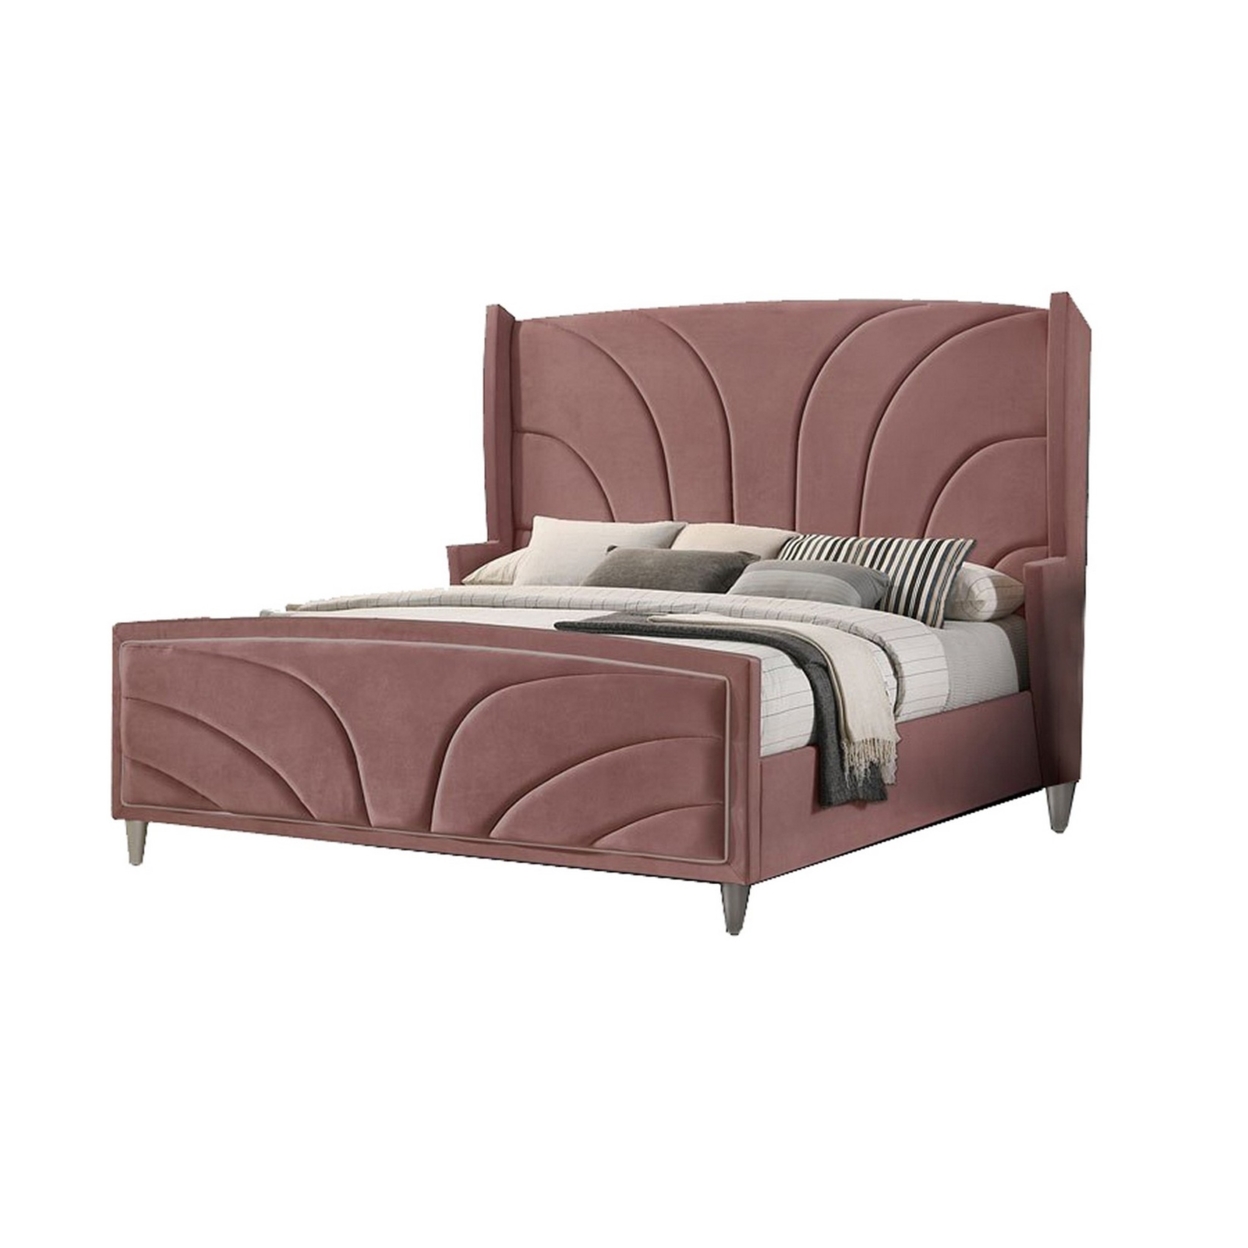 Kerith Modern Wood Queen Size Bed, Wingback Frame, Pink Velvet, Chrome Legs- Saltoro Sherpi